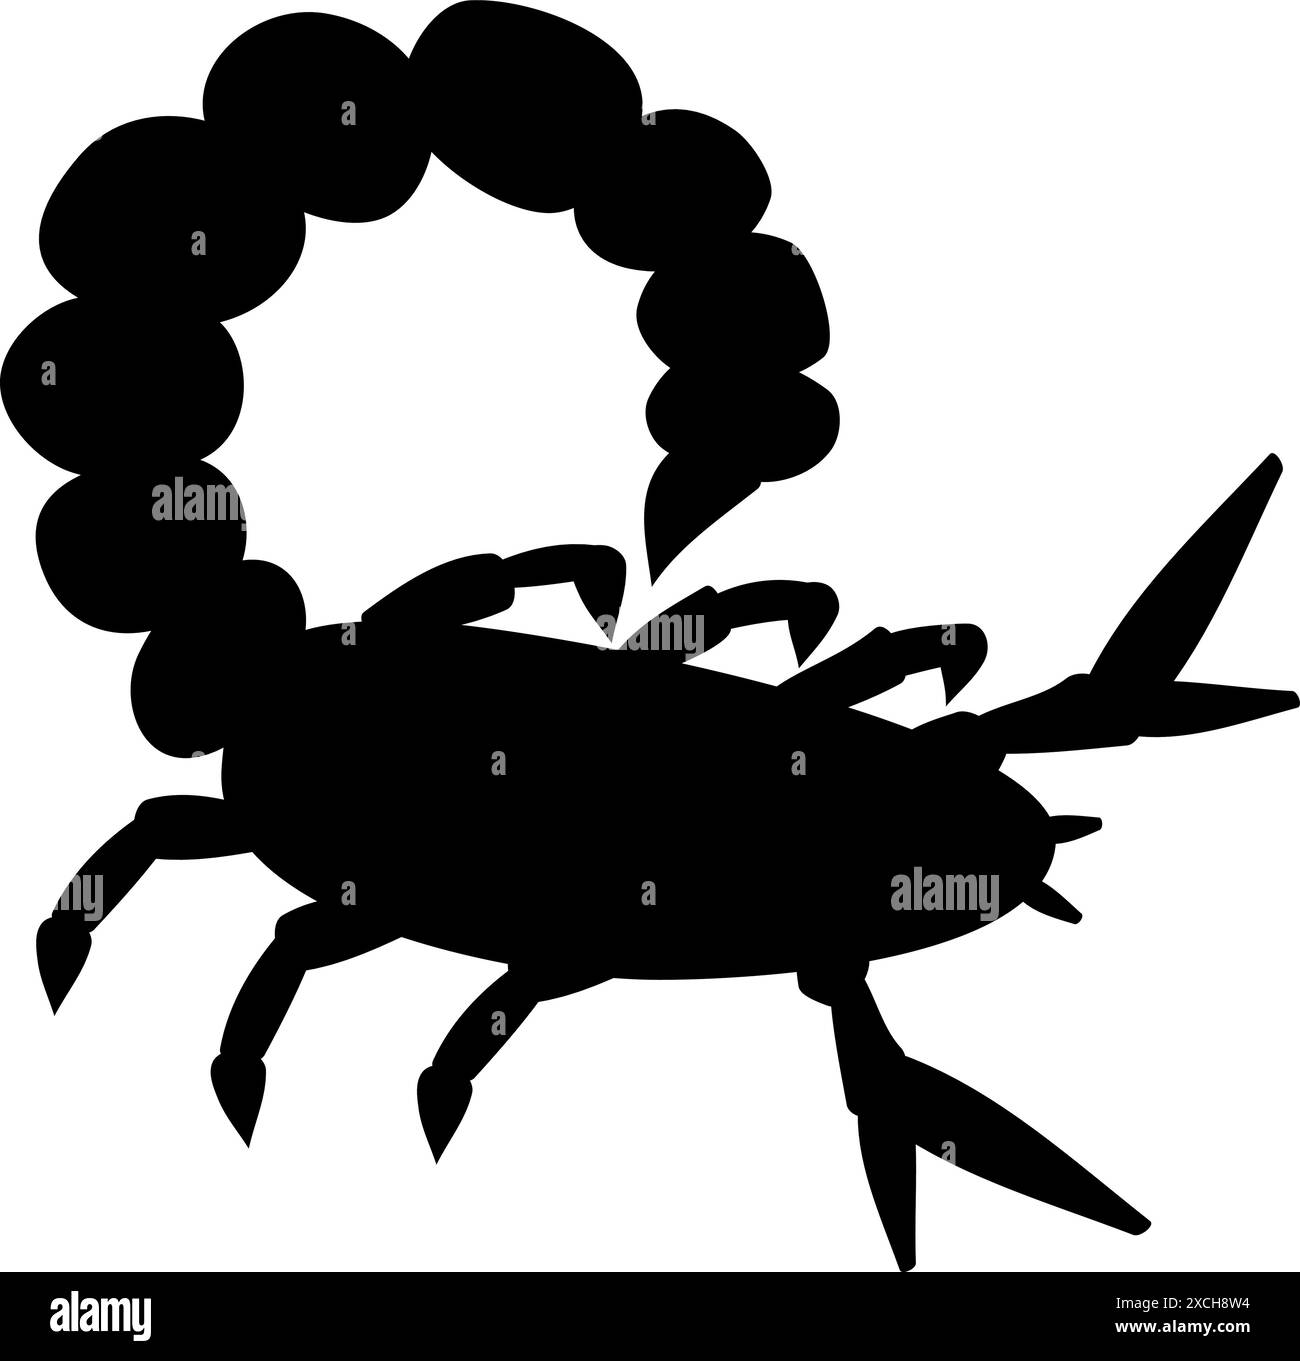 Scorpione astratto di forme semplici silhouette nera Illustrazione Vettoriale